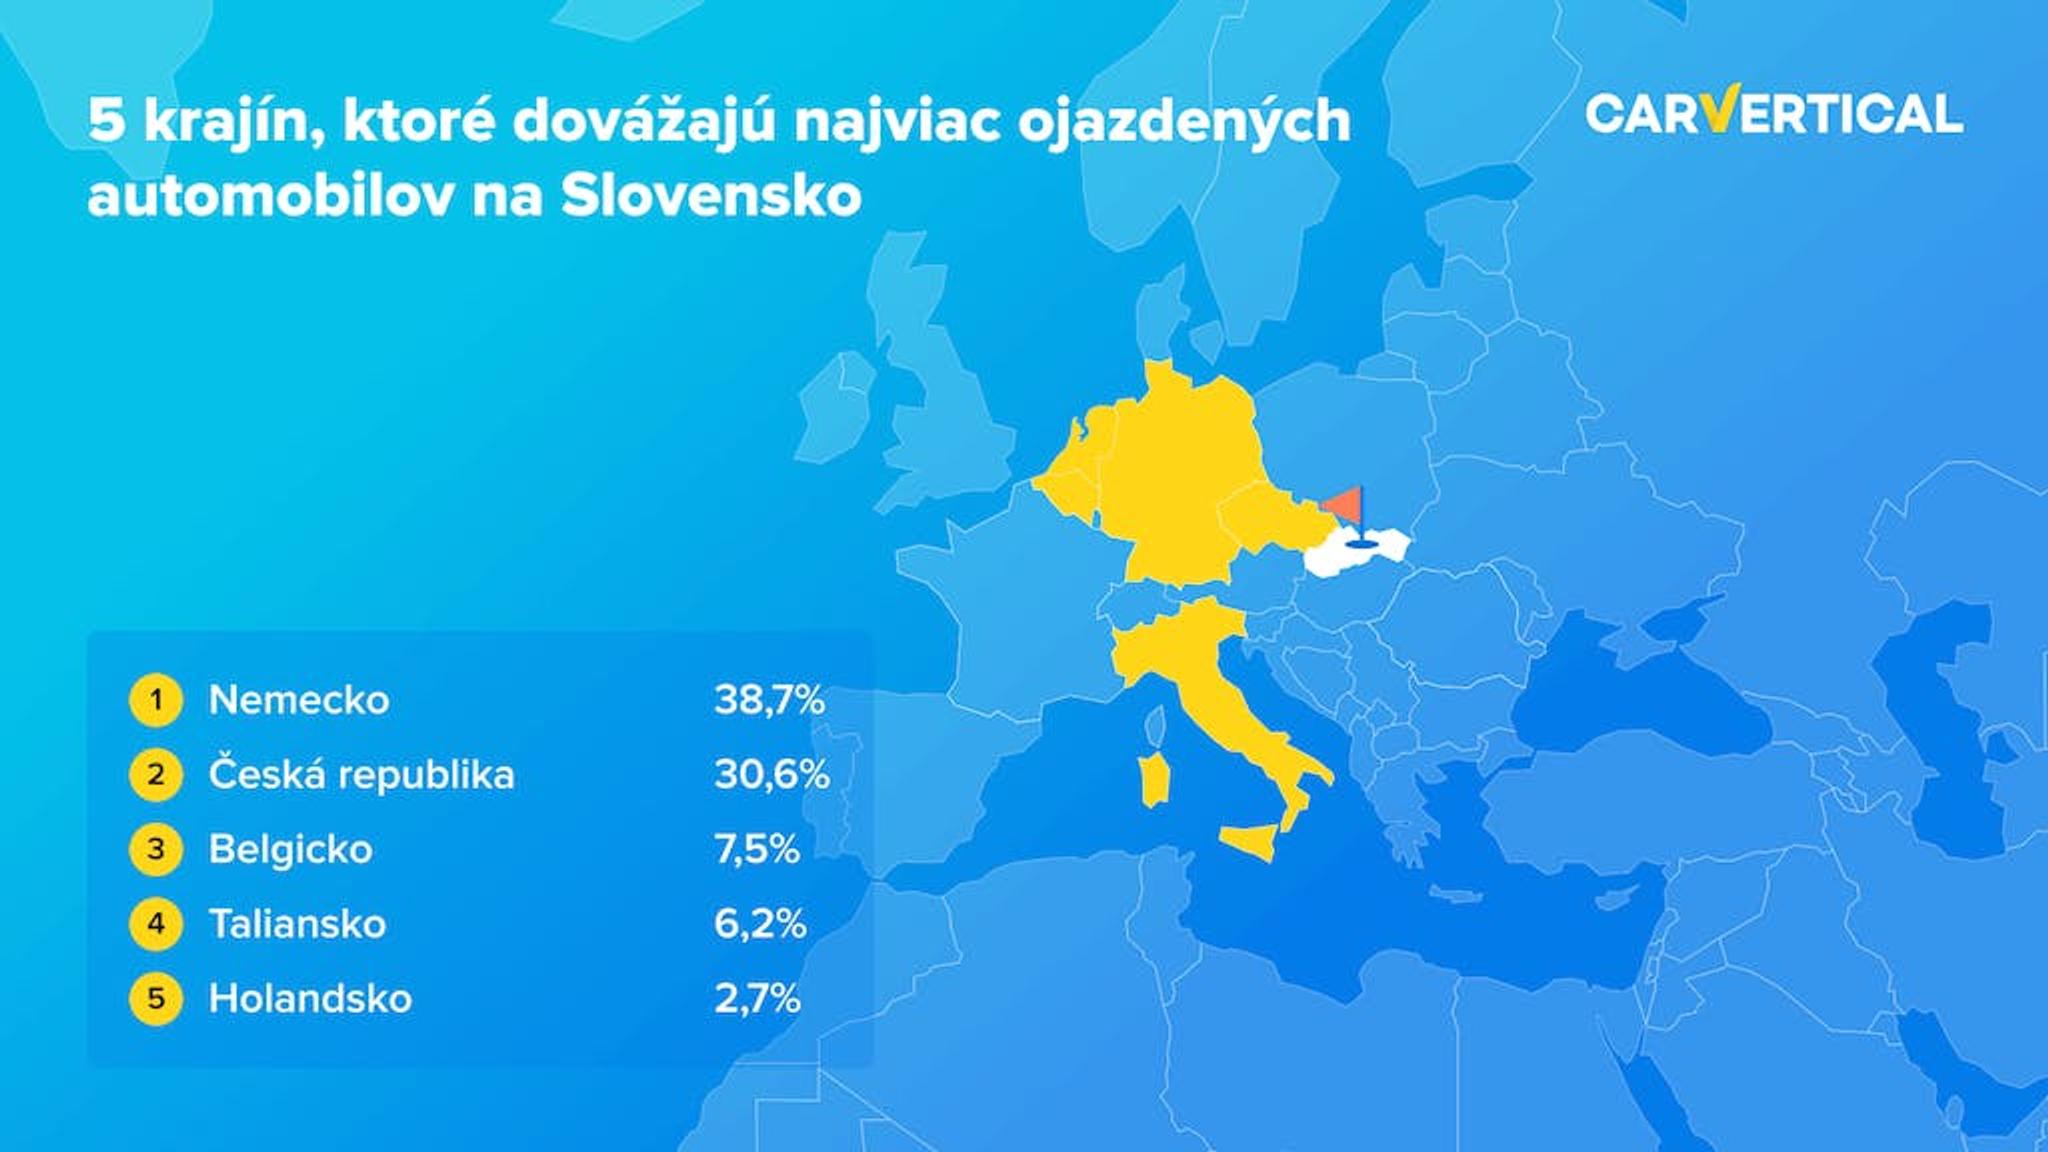 5 krajin, ktore dovazaju najviac ojazdenych automobilov na Slovensko